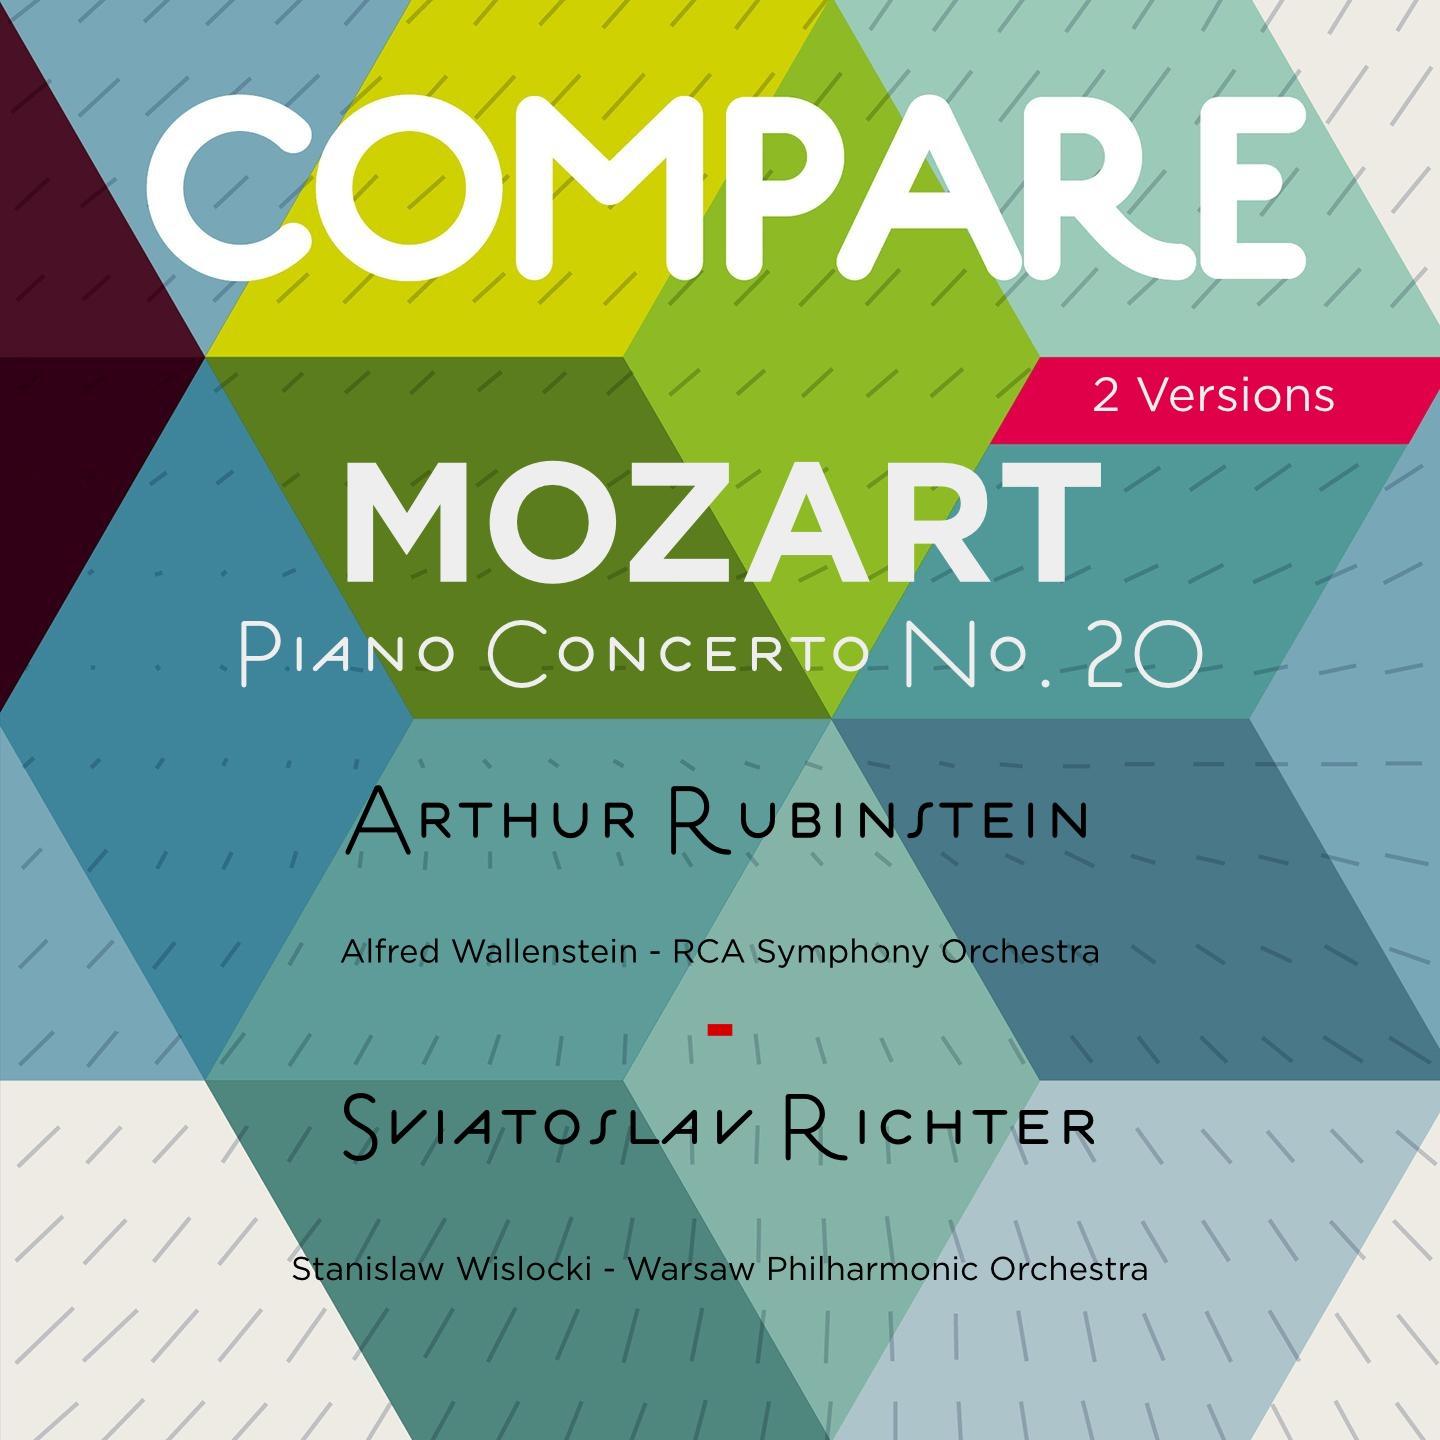 Piano Concerto No. 20 in D Minor, K. 466: I. Allegro